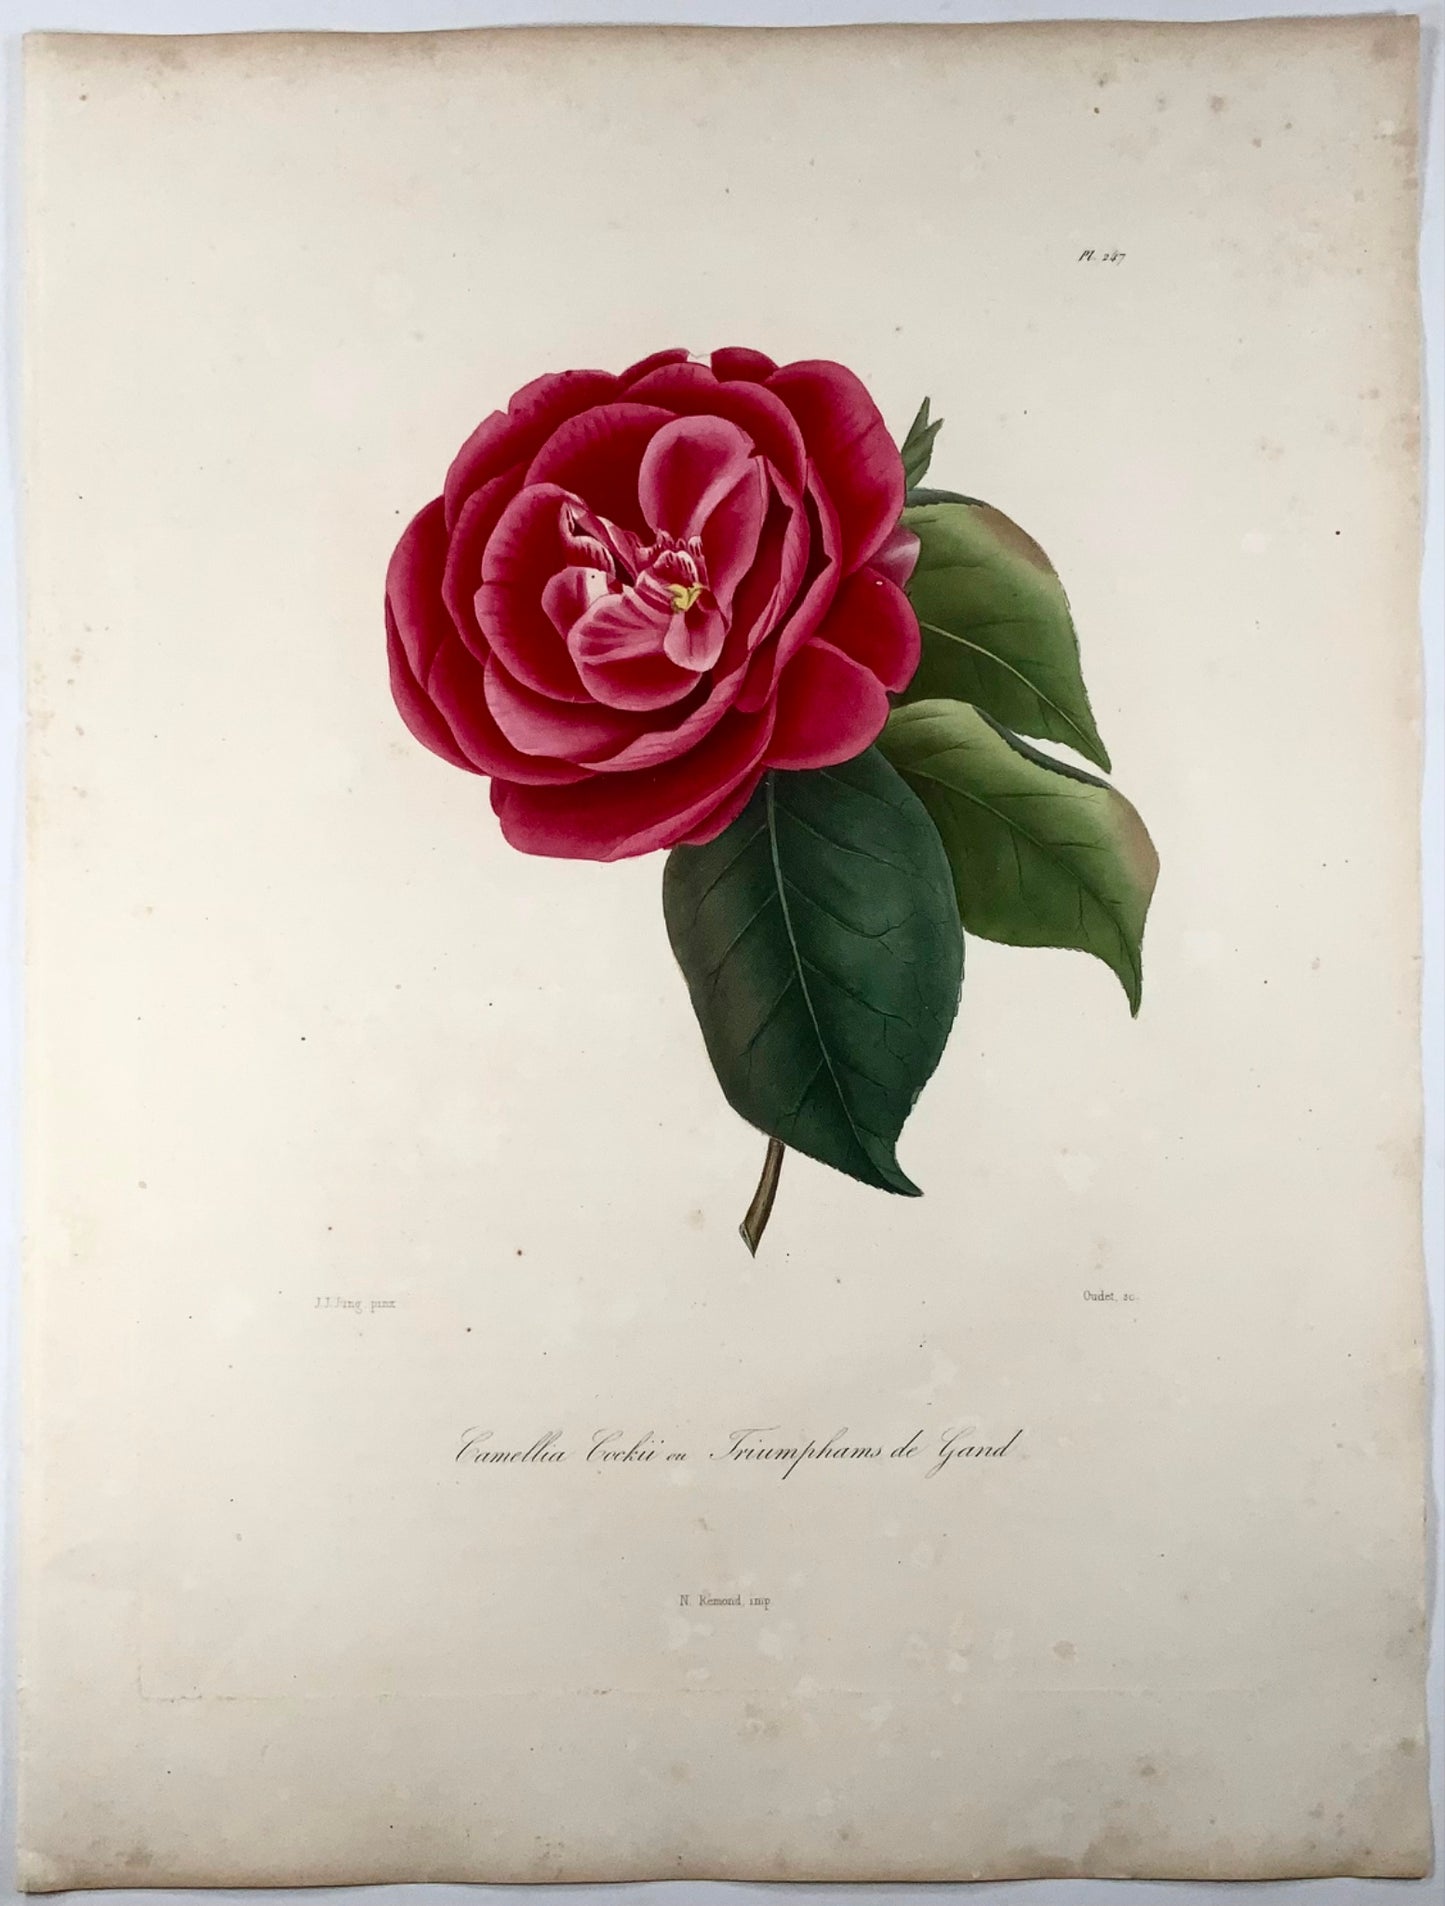 1841 Camellia Cockii, botanica, disegnato da JJ Jung, inciso da Oudet, Berlèse